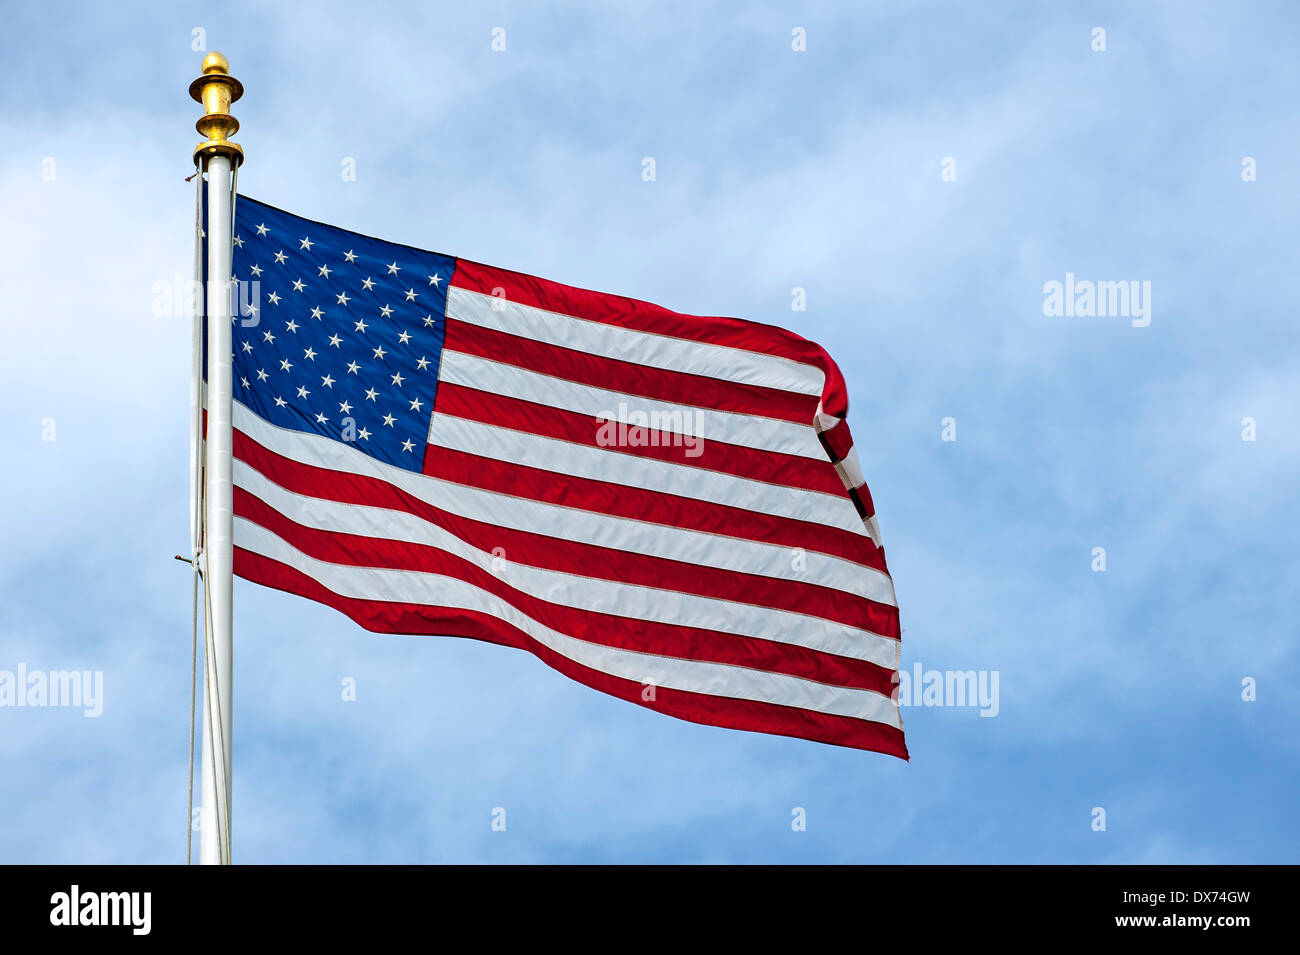 Amerikanische Flagge zeigen uns Stars and Stripes wehen im wind Stockfoto